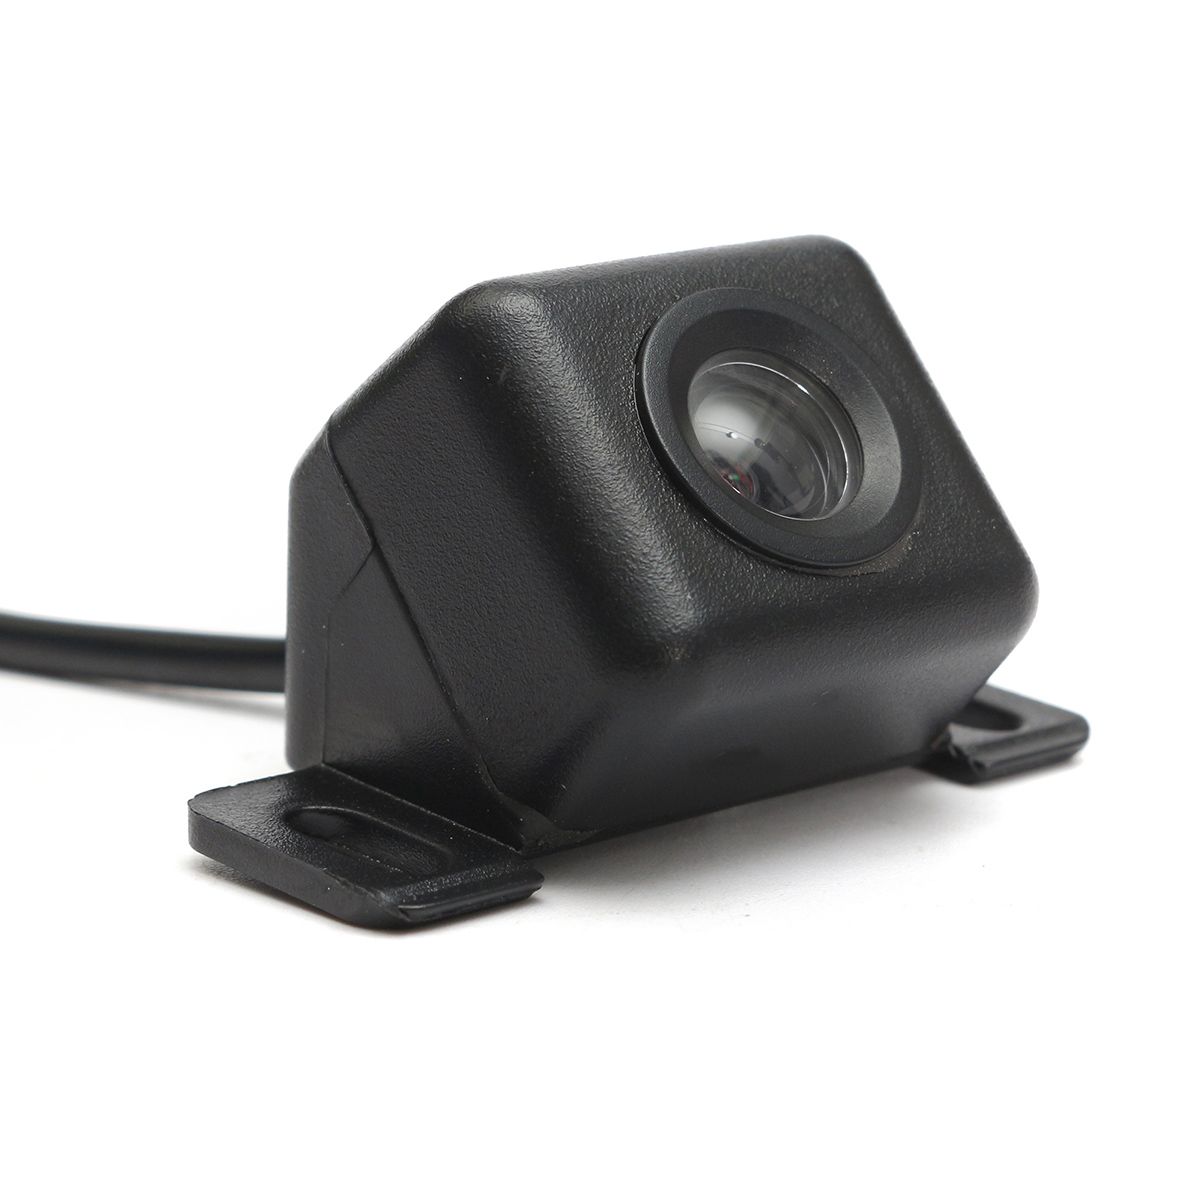 43-Inch-LCD-Monitor-Car-Rear-View-Camera-Kit-Backup-Camera-Support-Night-Vision-1393004